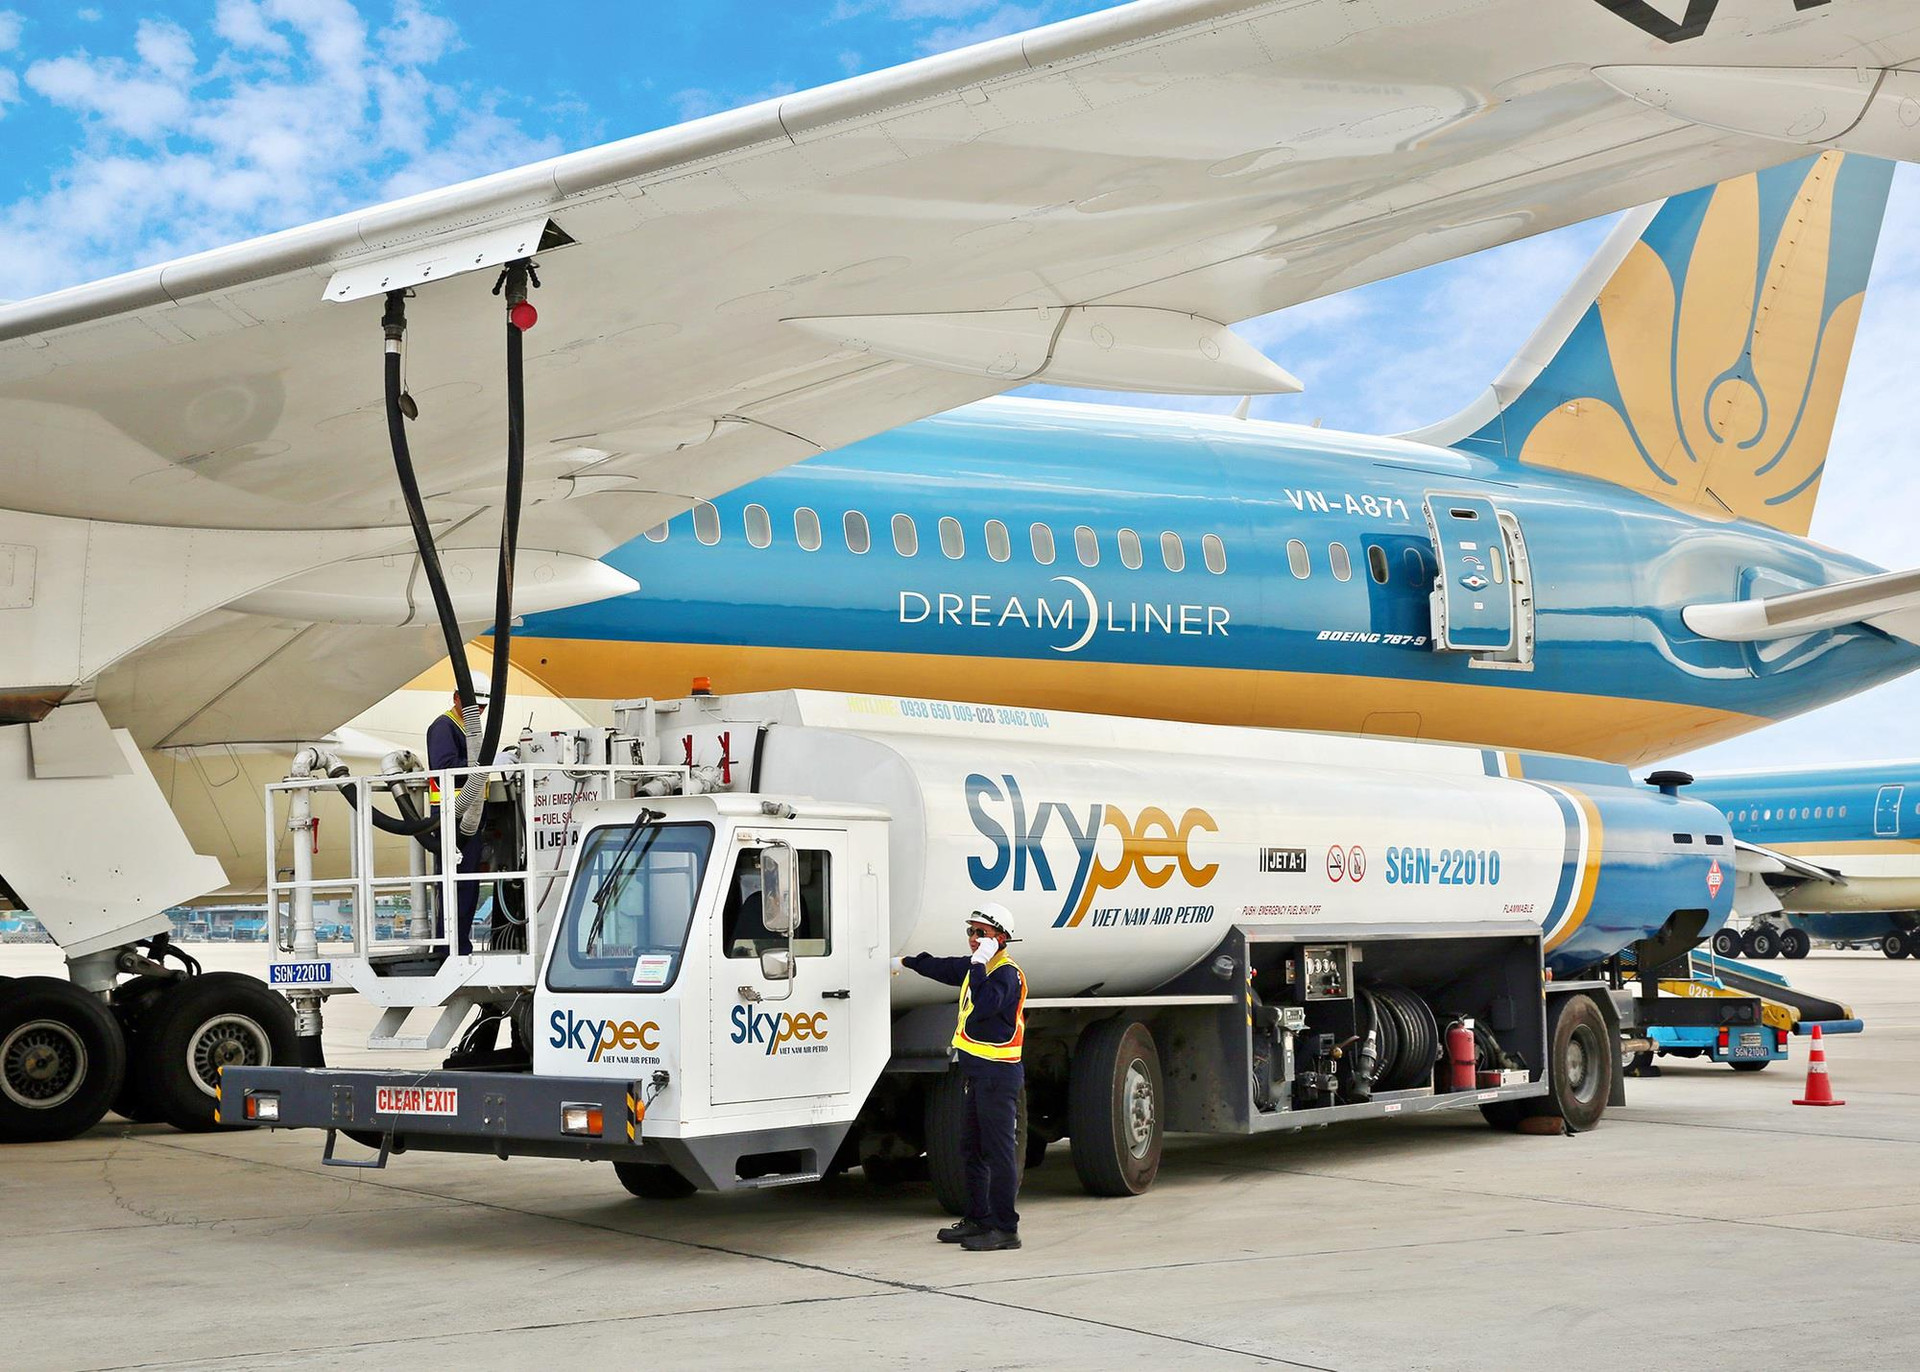 Chính phủ yêu cầu chuyển Skypec từ Vietnam Airlines sang PVN - Ảnh 1.